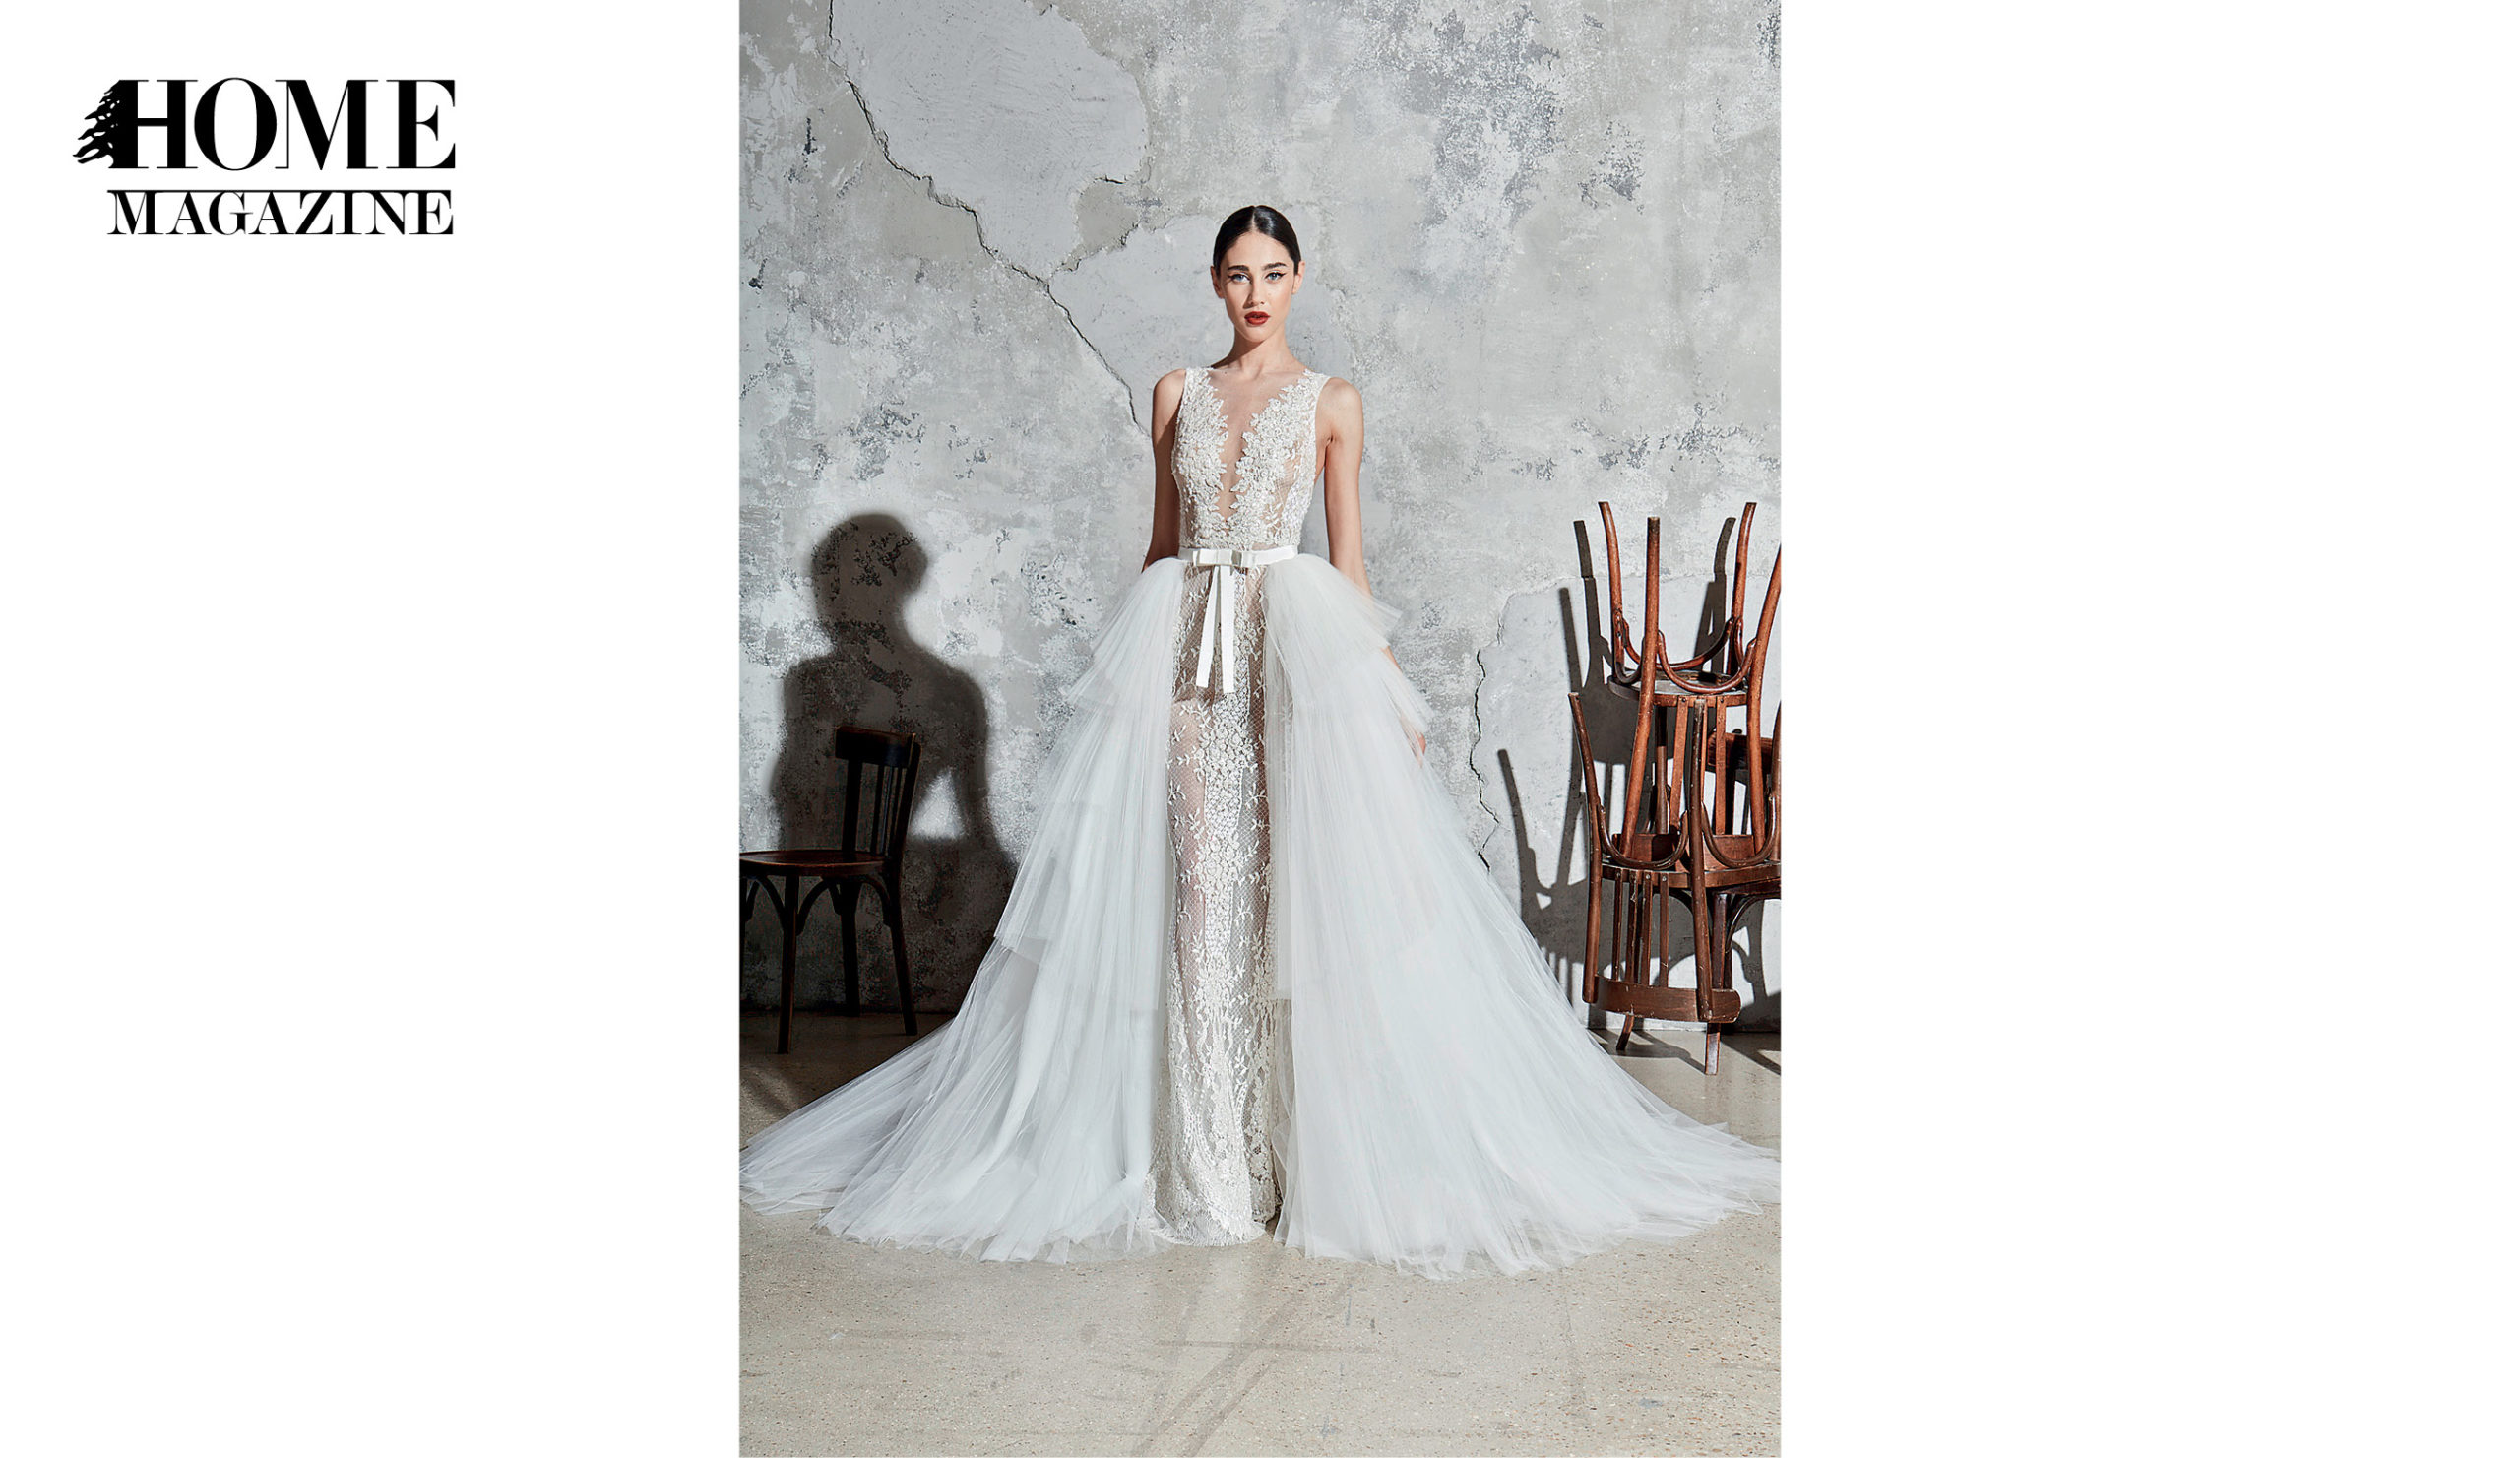 Model in bridal dress